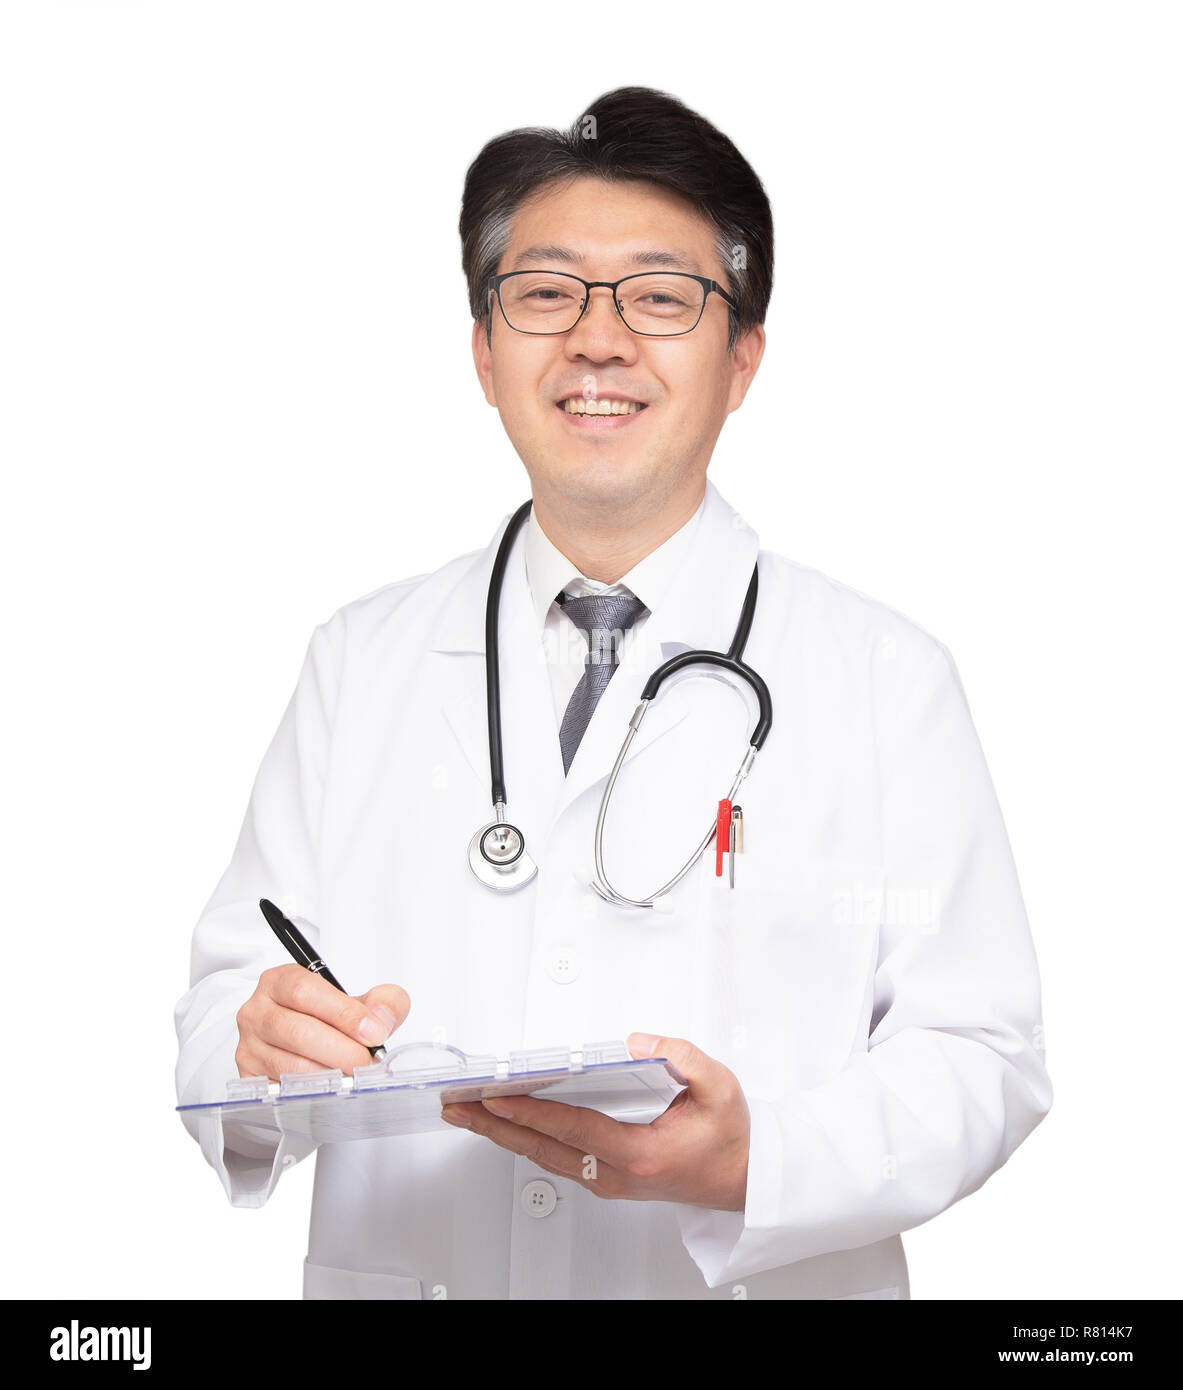 Врачи азиаты. Доктор Азиат. Азиатский врач. Мужчина врач Азиат. Хороший доктор врач Азиат.